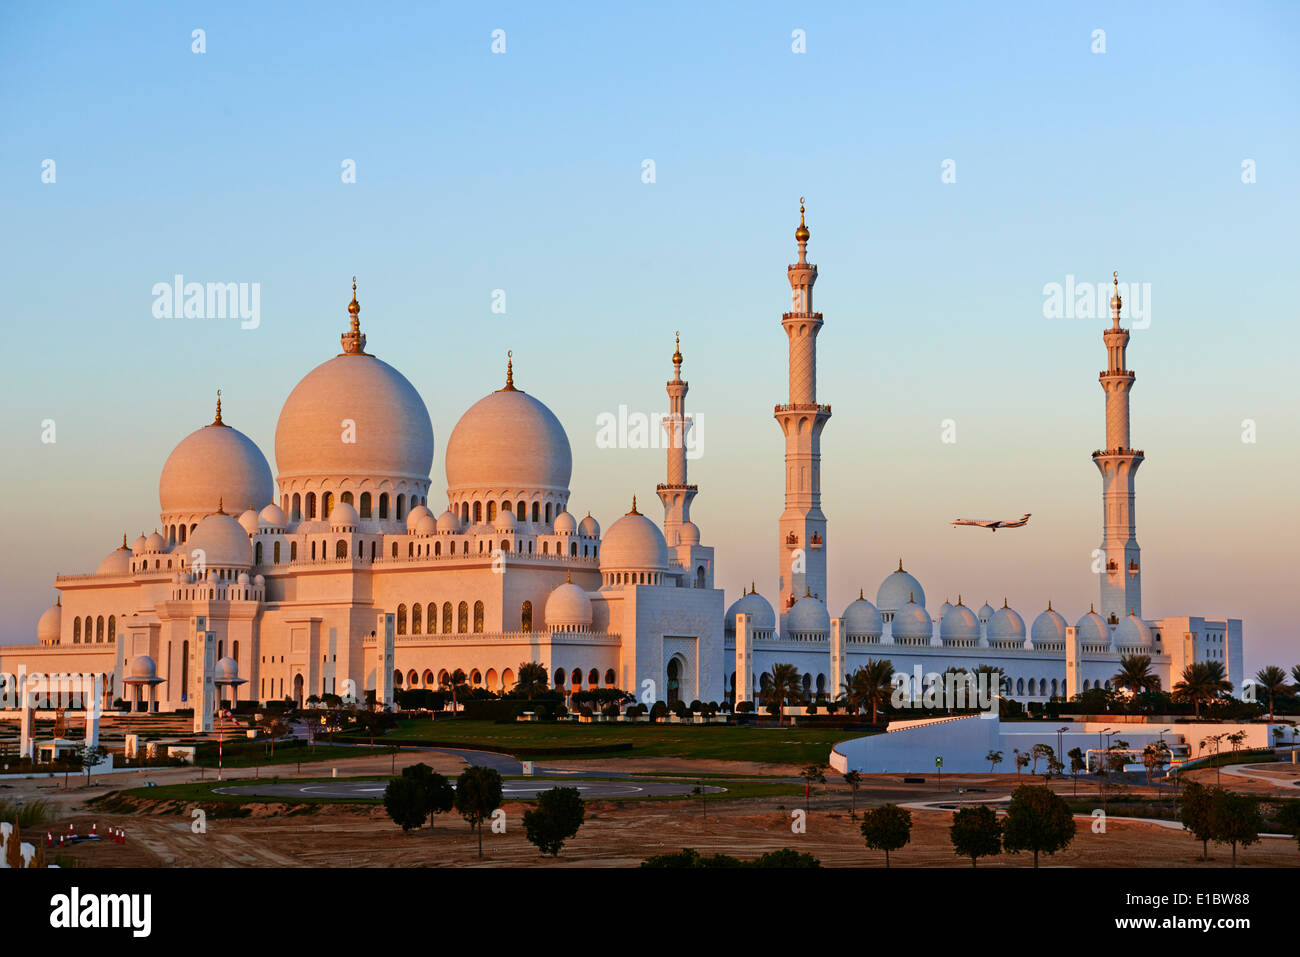 United Arab Emirates, Abu Dhabi, Sheikh Zayed Grand Mosque Stock Photo